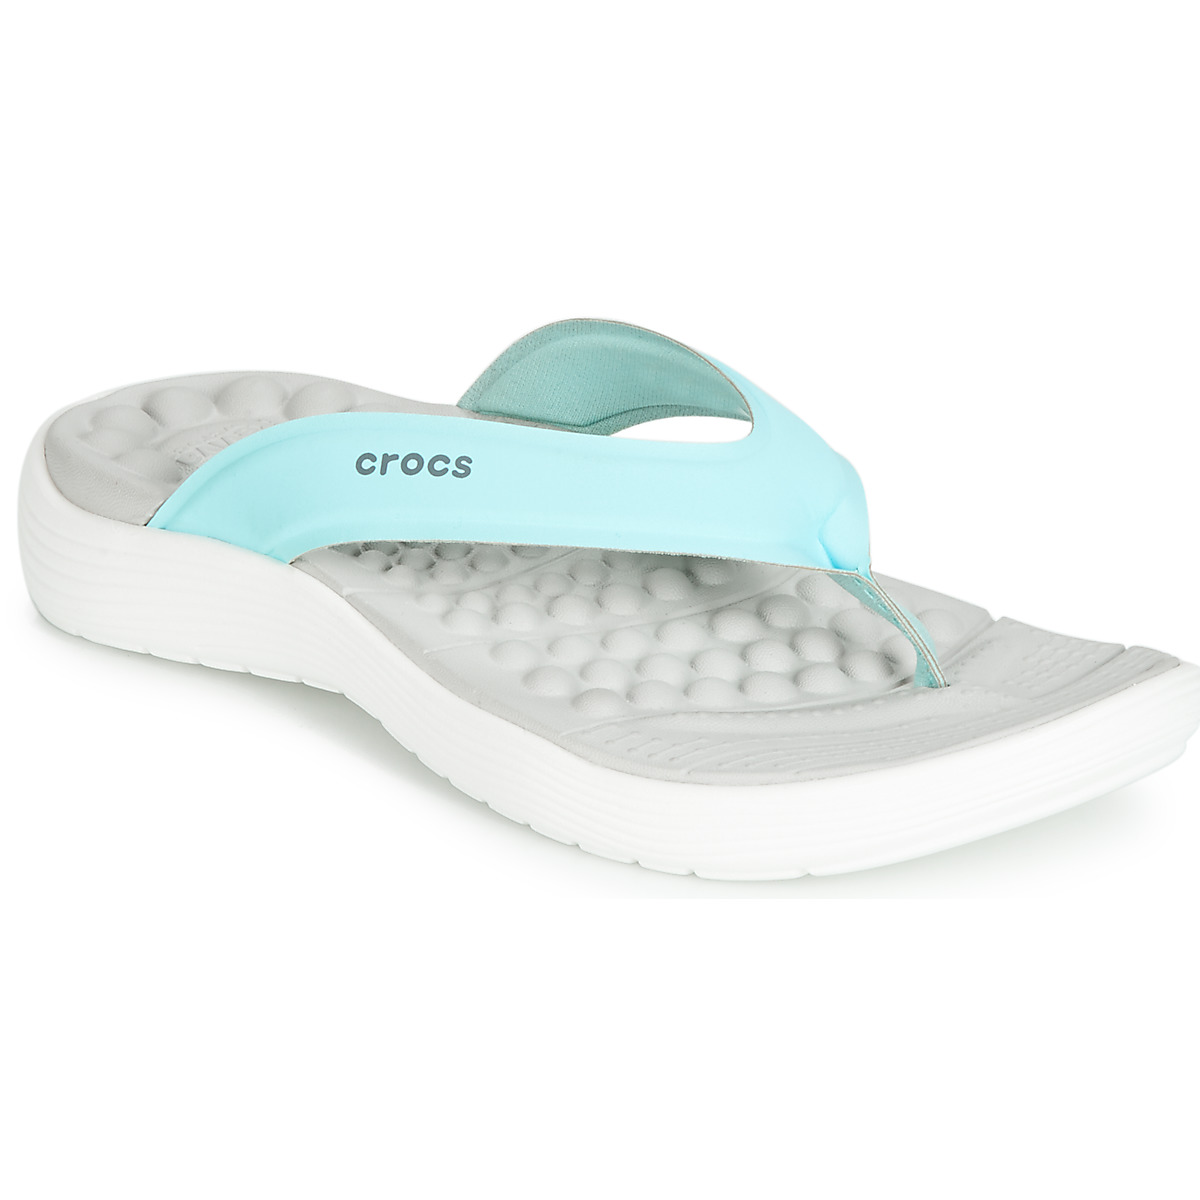 crocs slippers